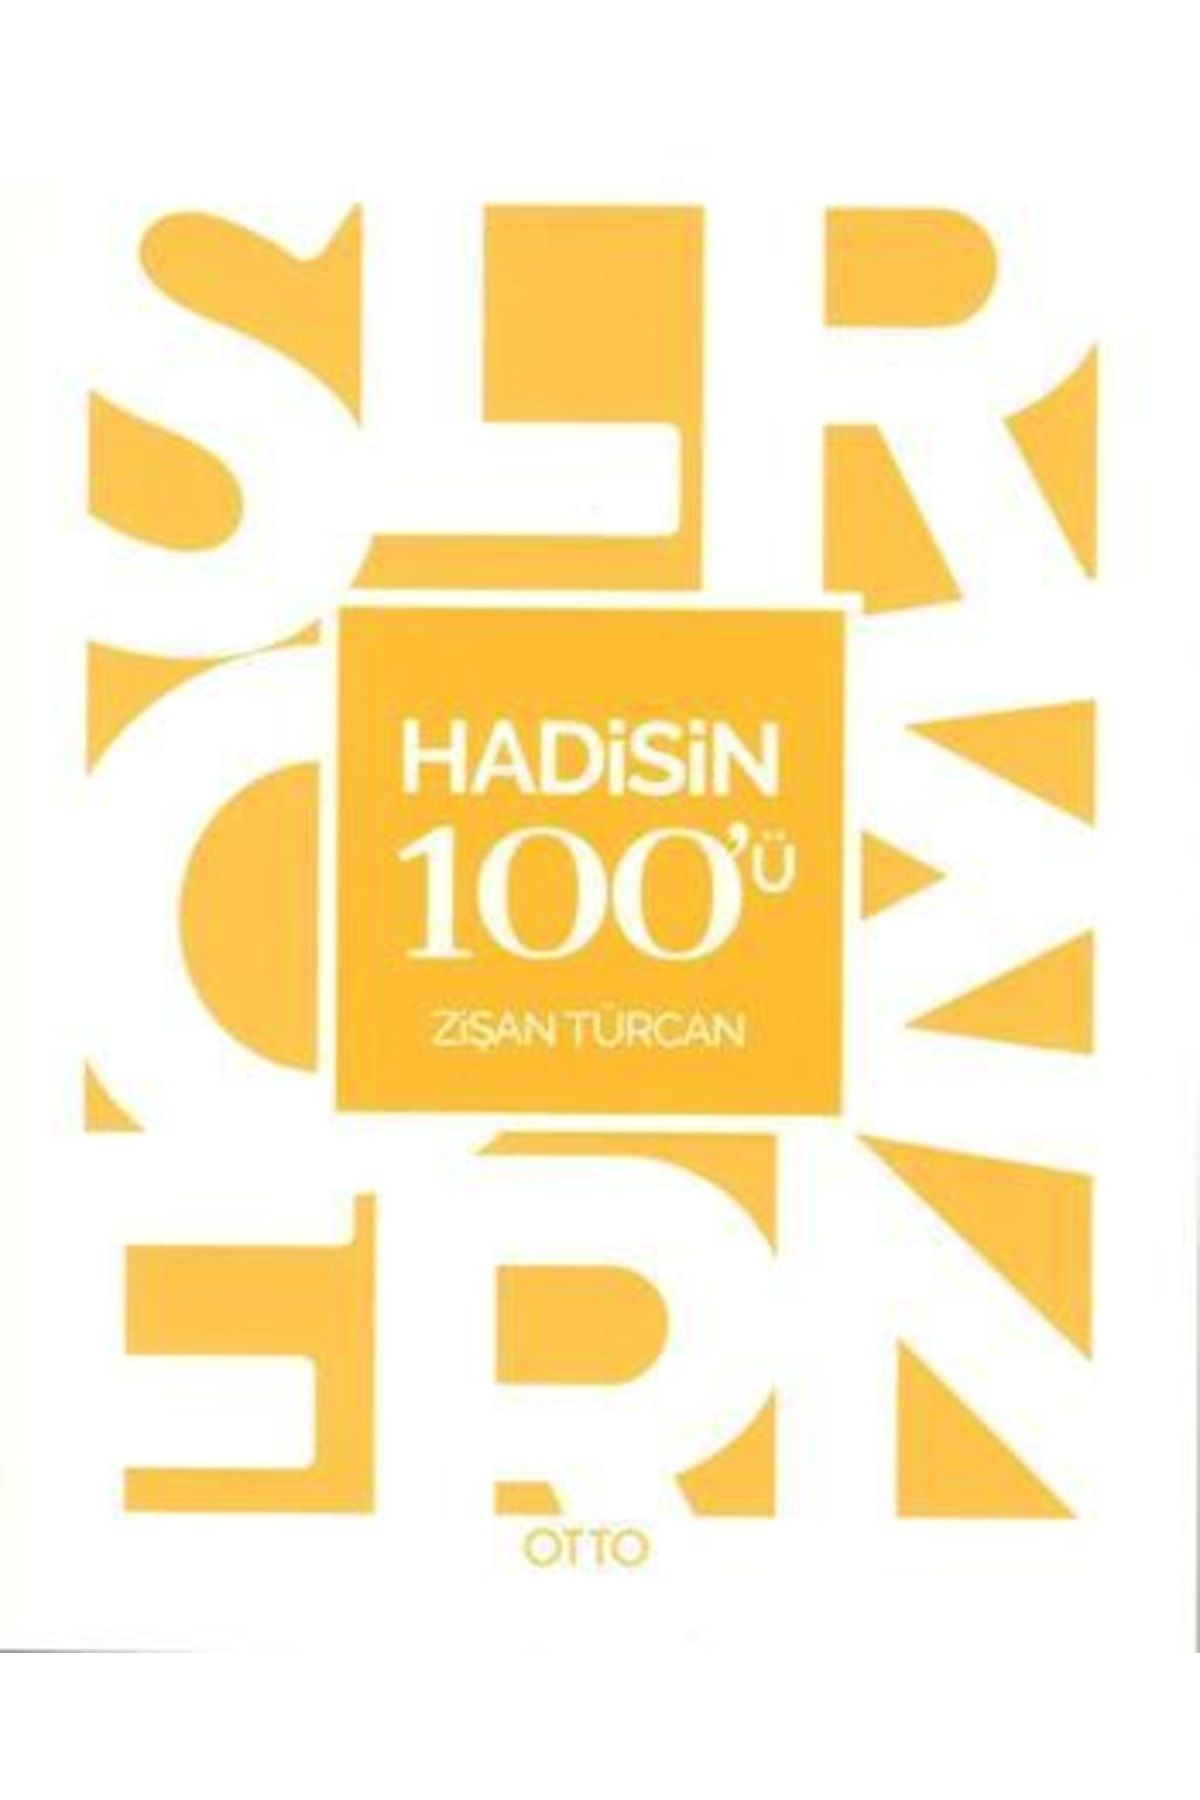 Otto Yayınları Hadisin 100'ü - Zişan Türcan